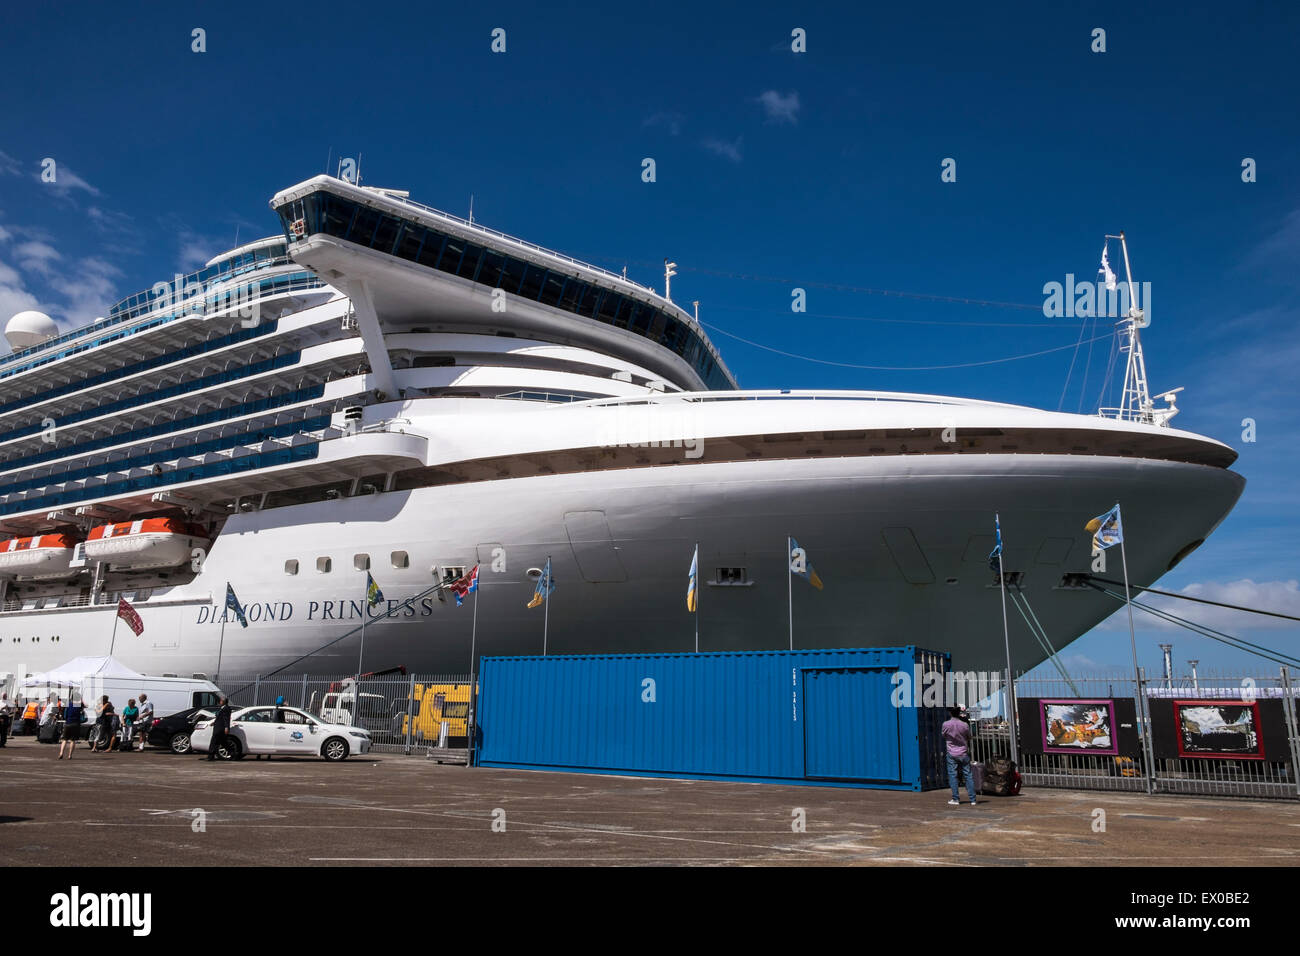 Kreuzfahrtschiff Diamond Princess in dock bei Auckland New Zealand, bereit, für eine Reise nach Australien begeben. Stockfoto